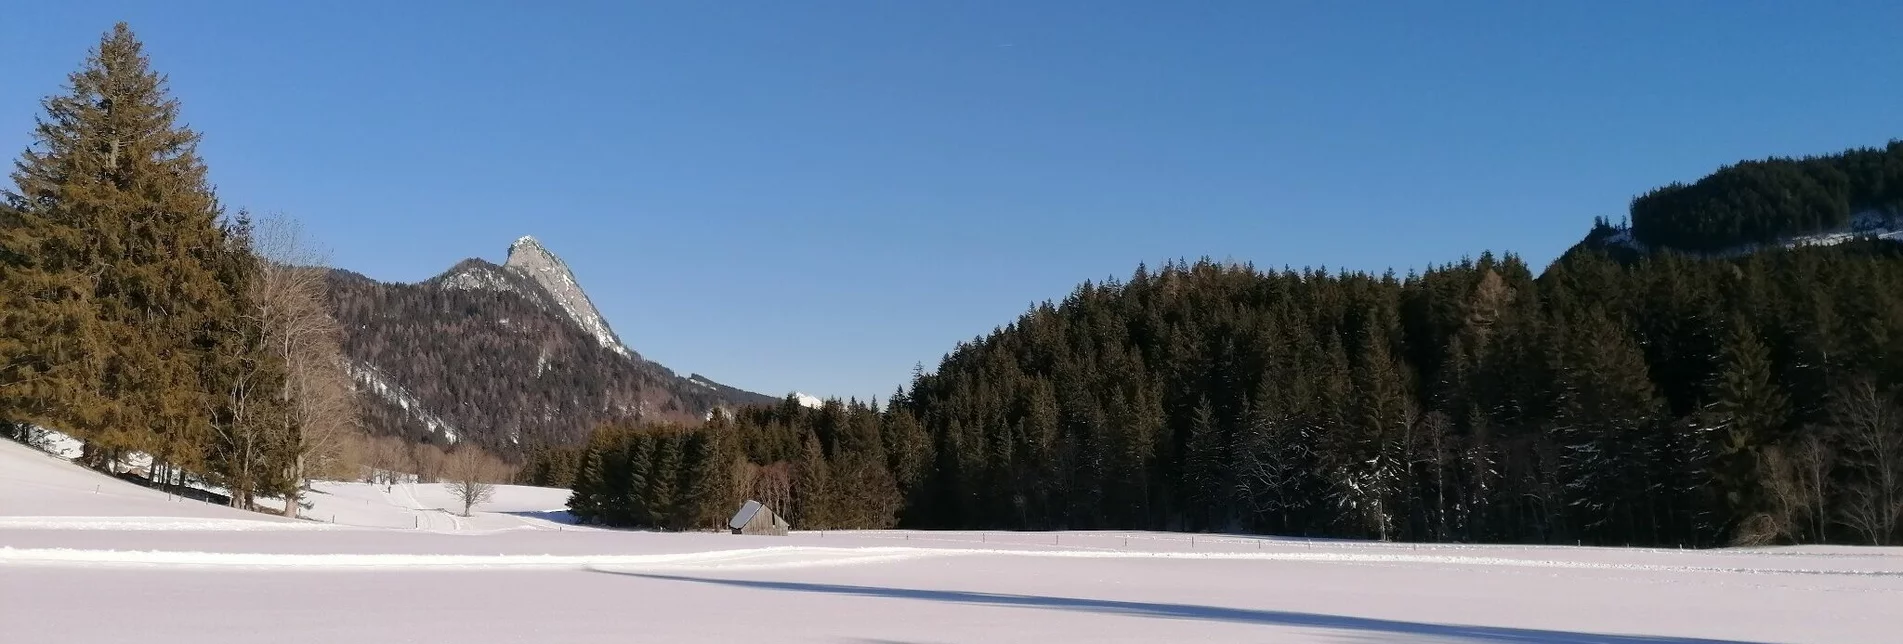 Langlauf Skating Spechtensee Loipe - Touren-Impression #1 | © Erlebnisregion Schladming-Dachstein